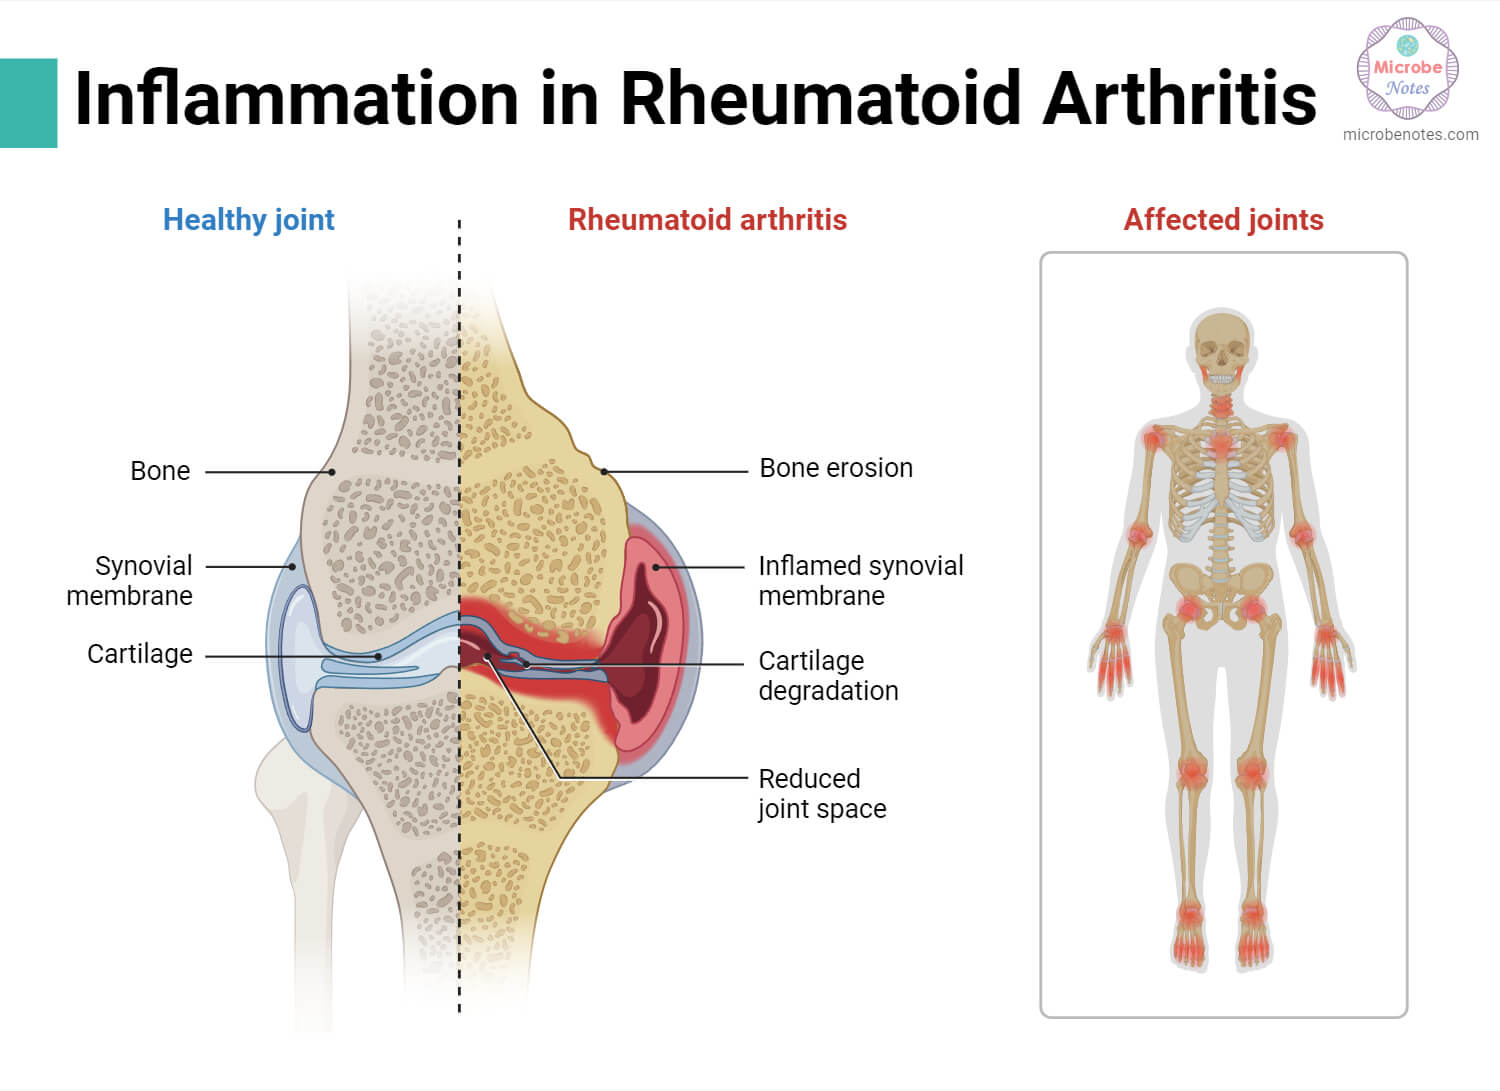 Inflammation in Rheumatoid Arthritis